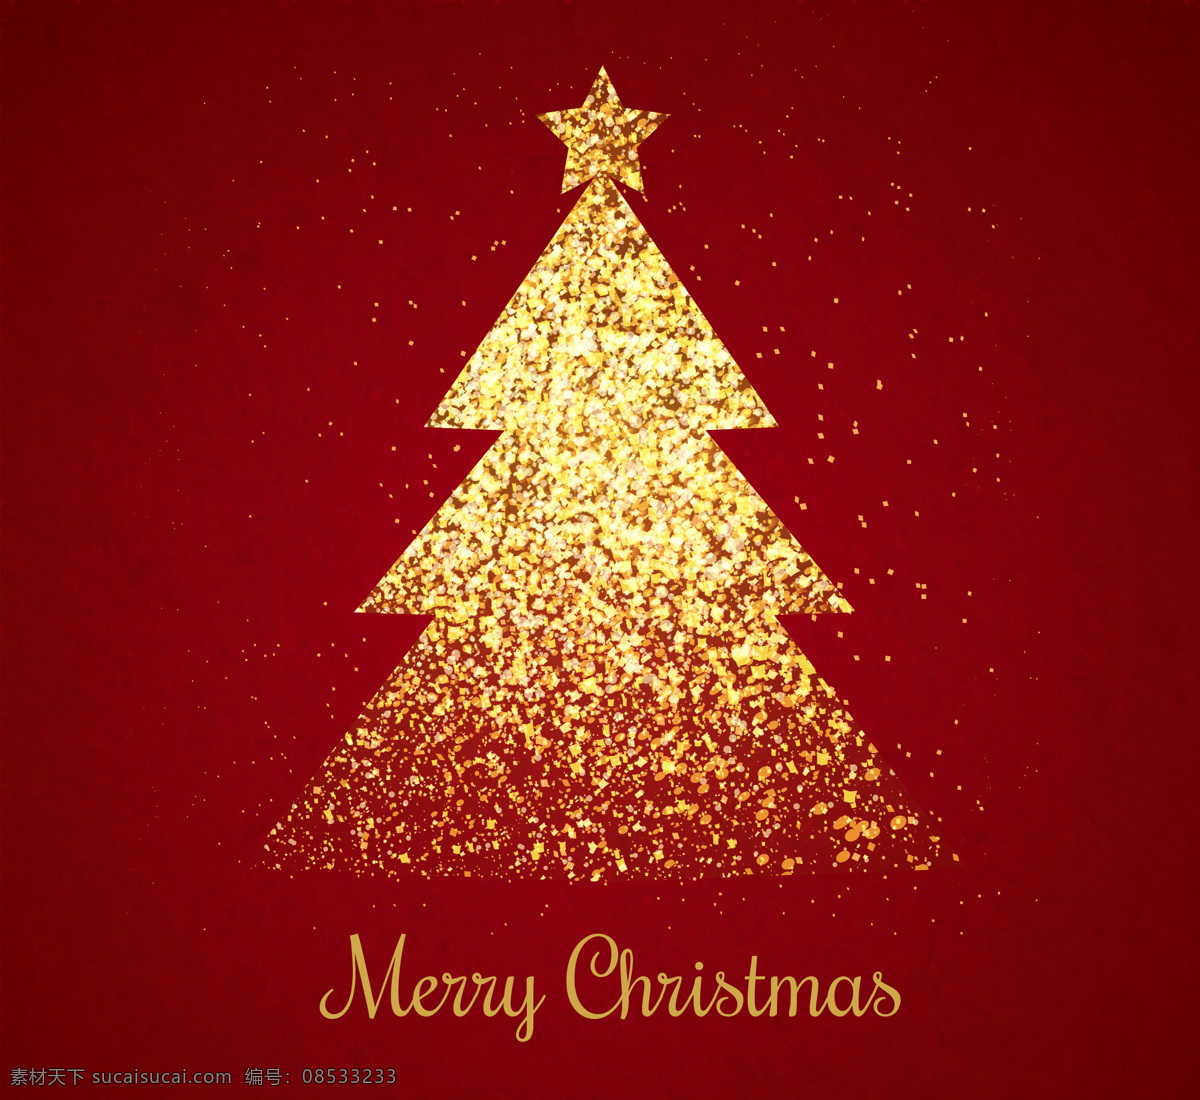 金色 圣诞树 背景 圣诞节 节日 卡通 过节 庆祝 狂欢 西方节日 假期 扁平 矢量